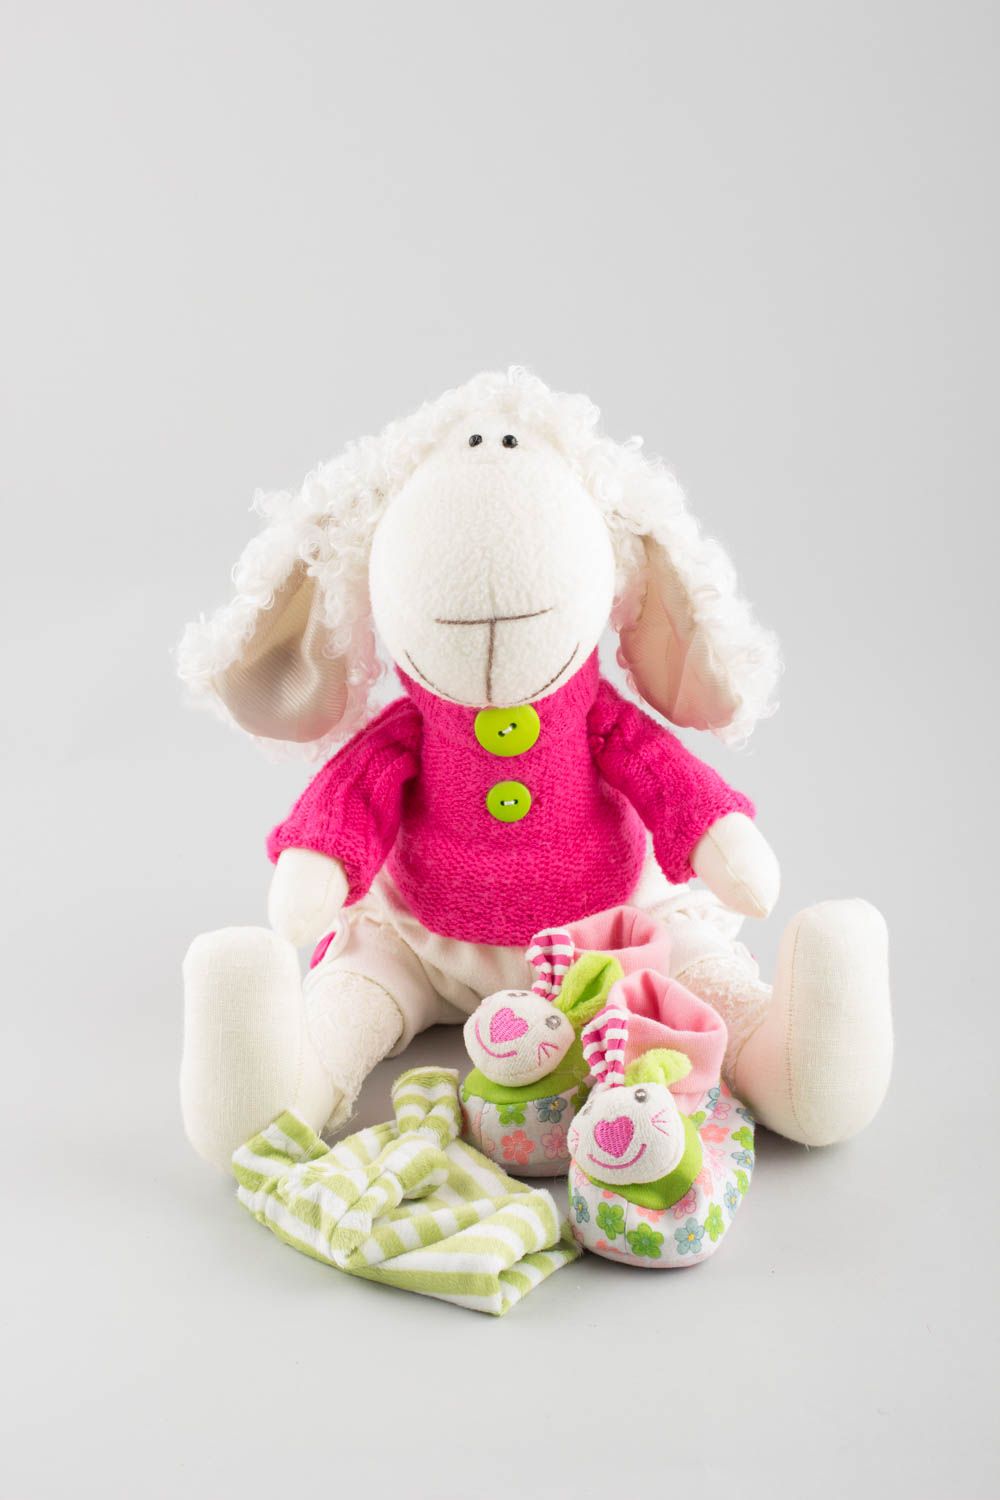 Textil Kuscheltier Schaf mit Mütze niedlich Spielzeug für Kinder und Dekor  foto 4